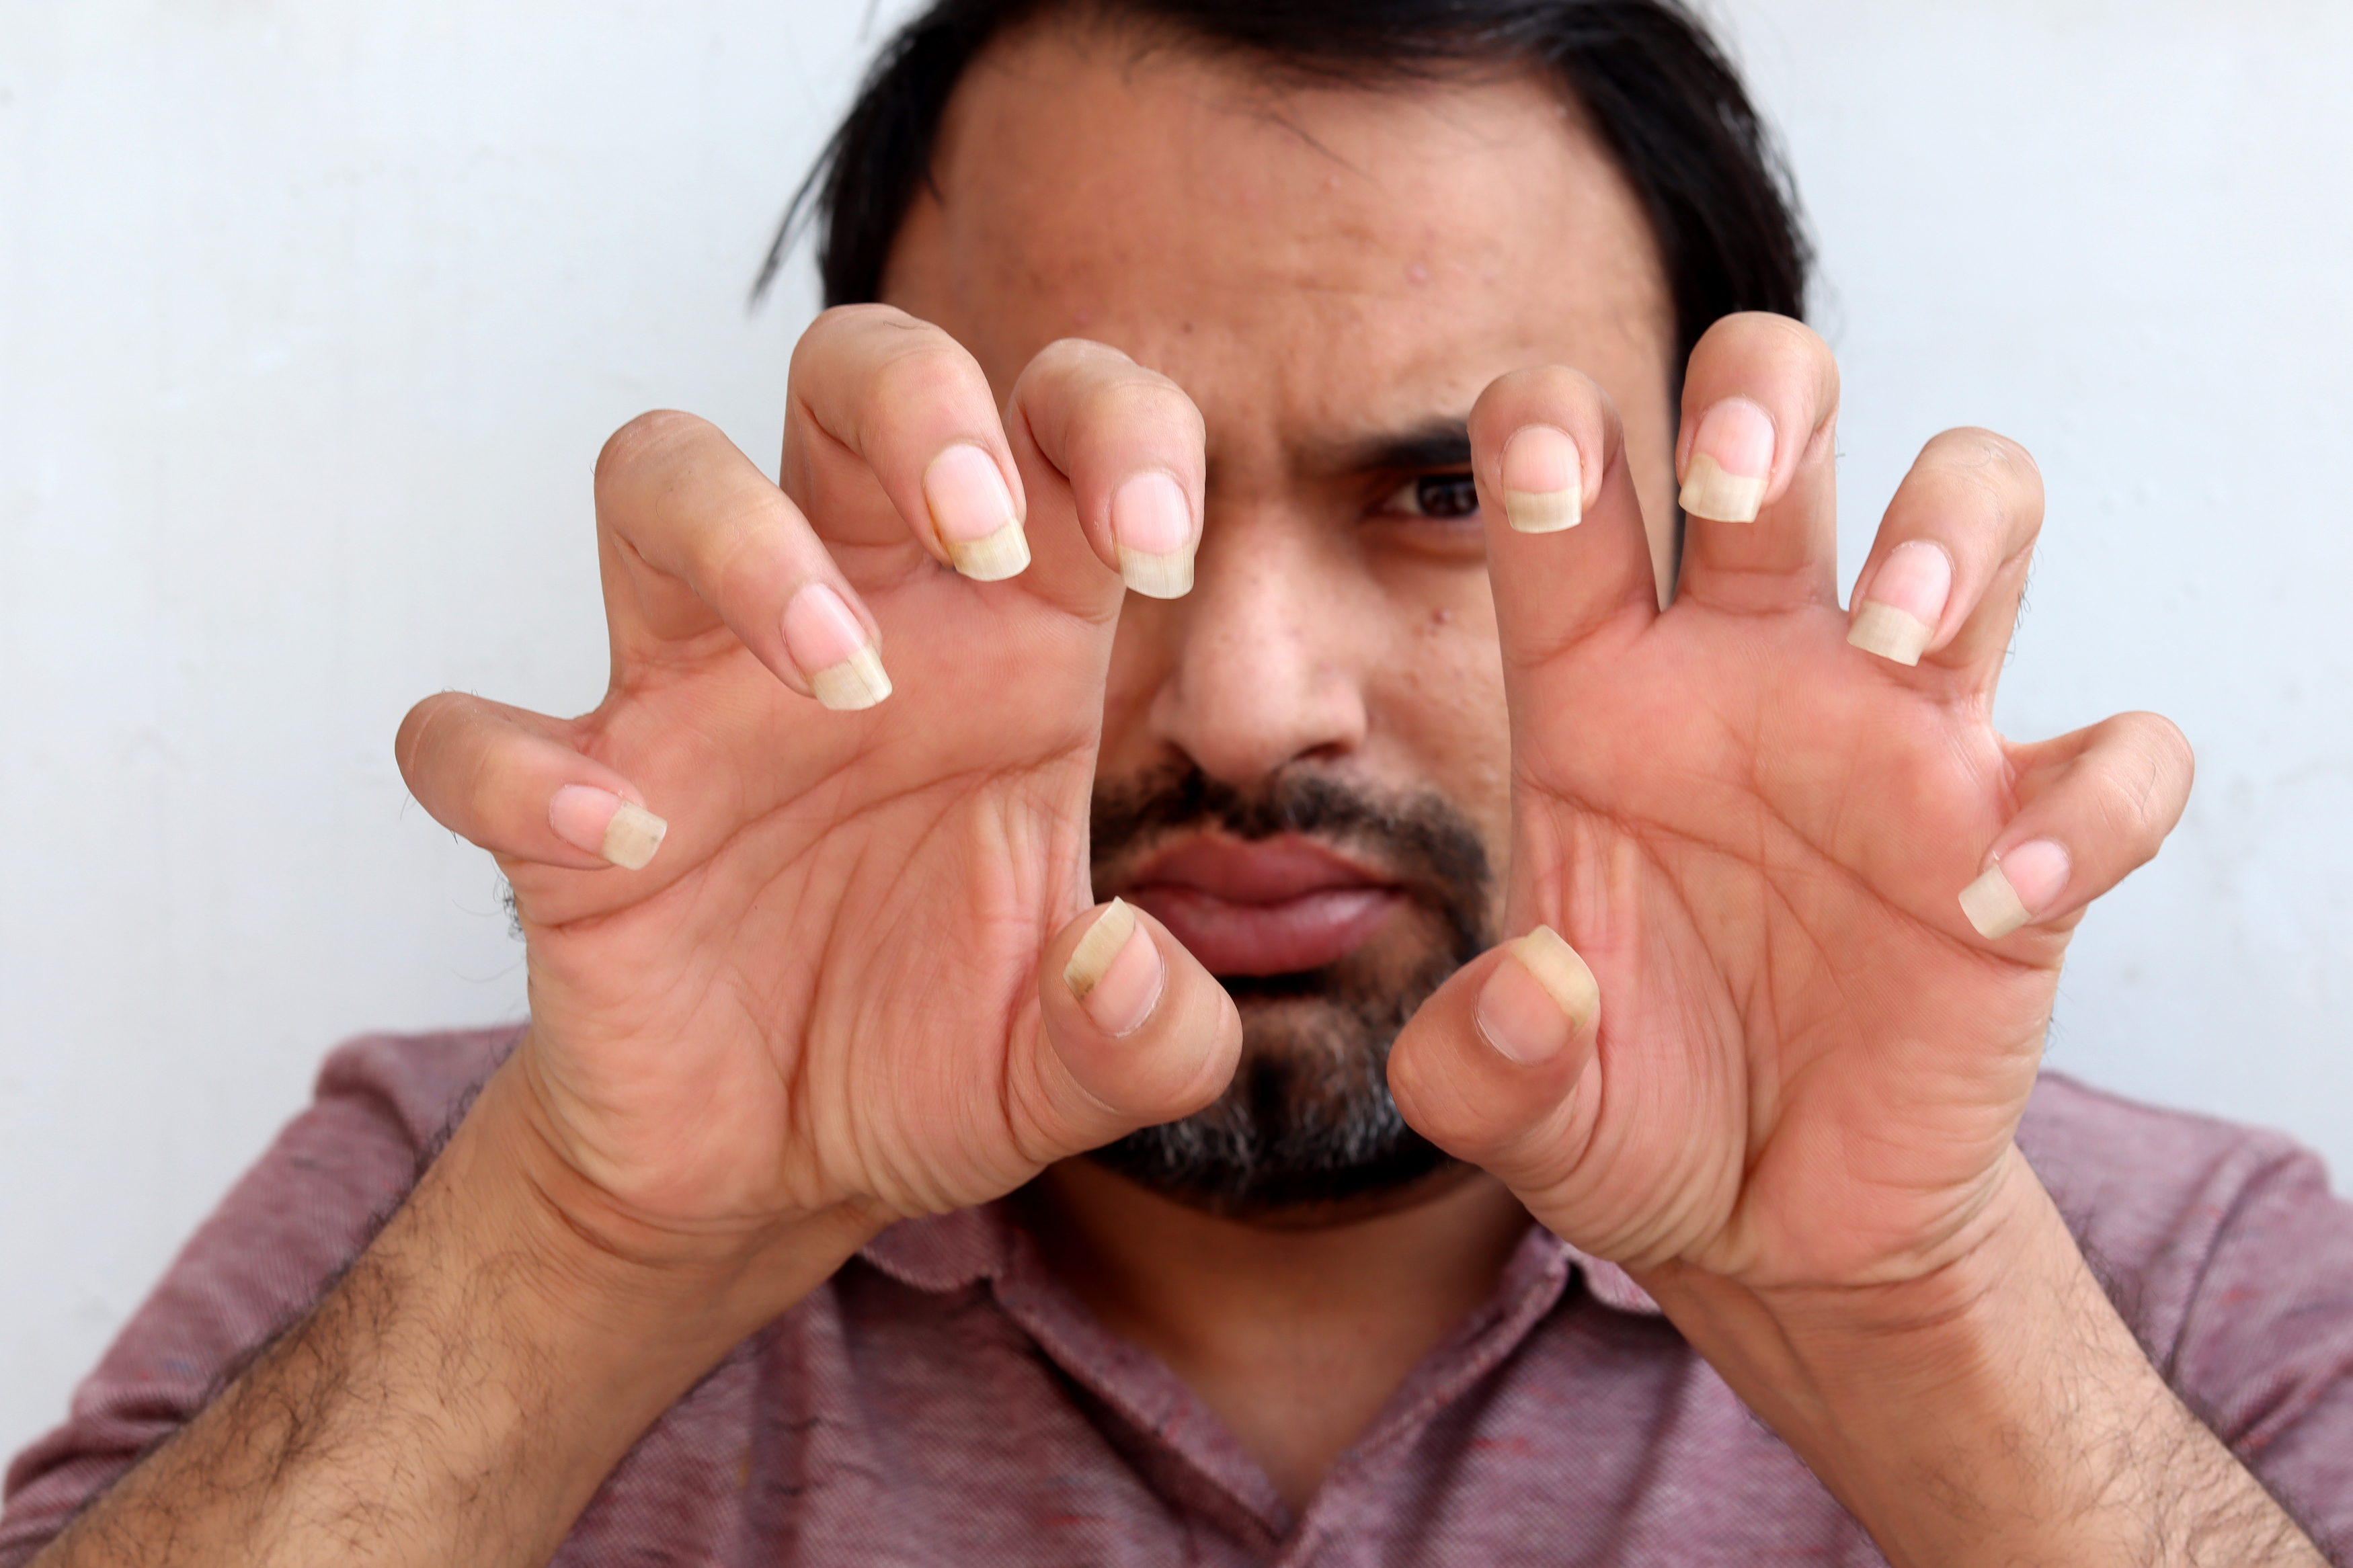 A man showing his long fingernails